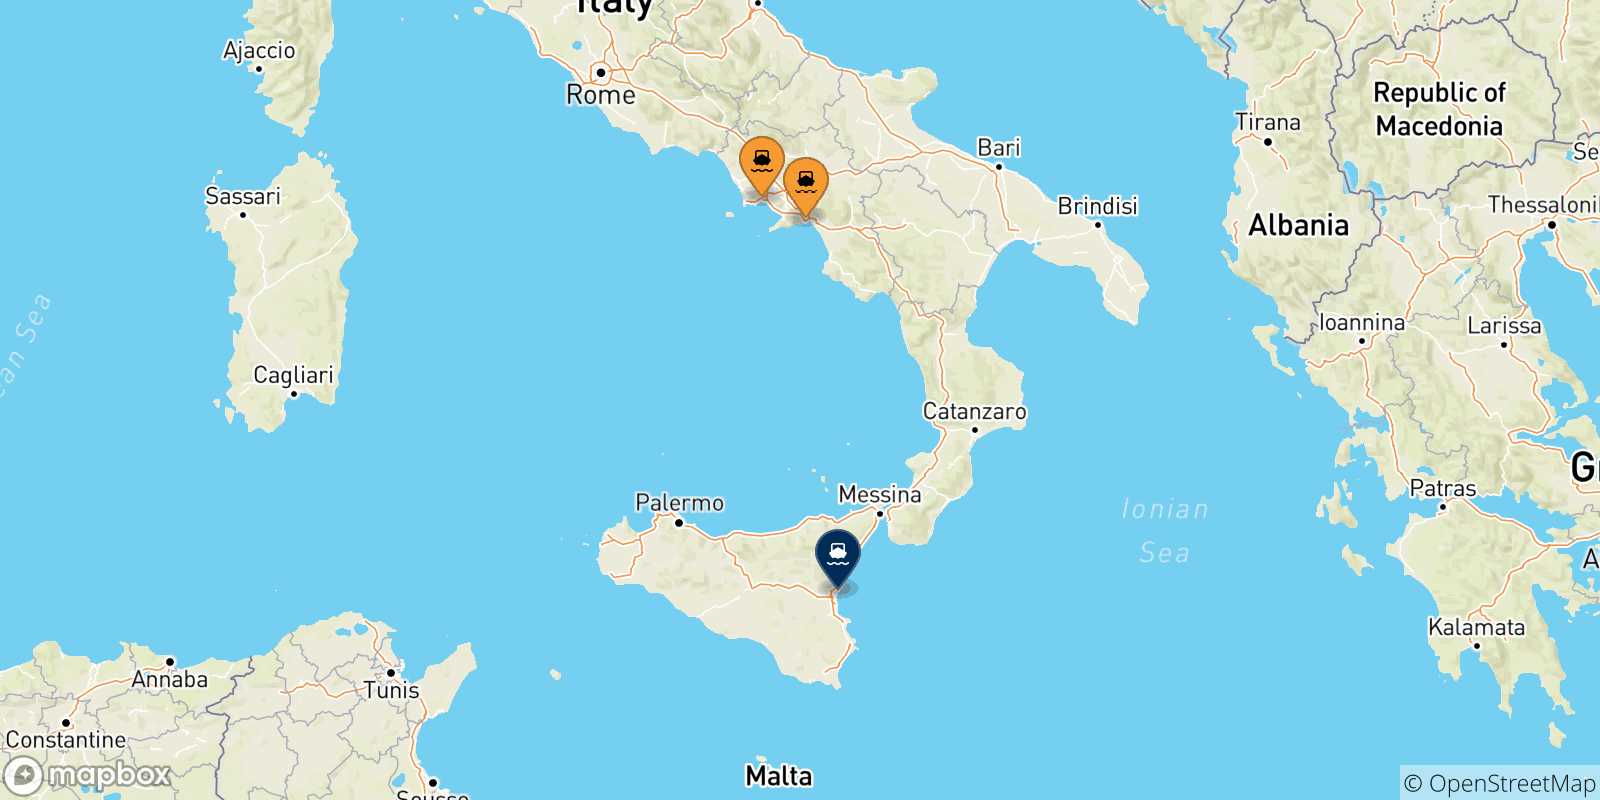 Mappa delle possibili rotte tra l'Italia e Catania